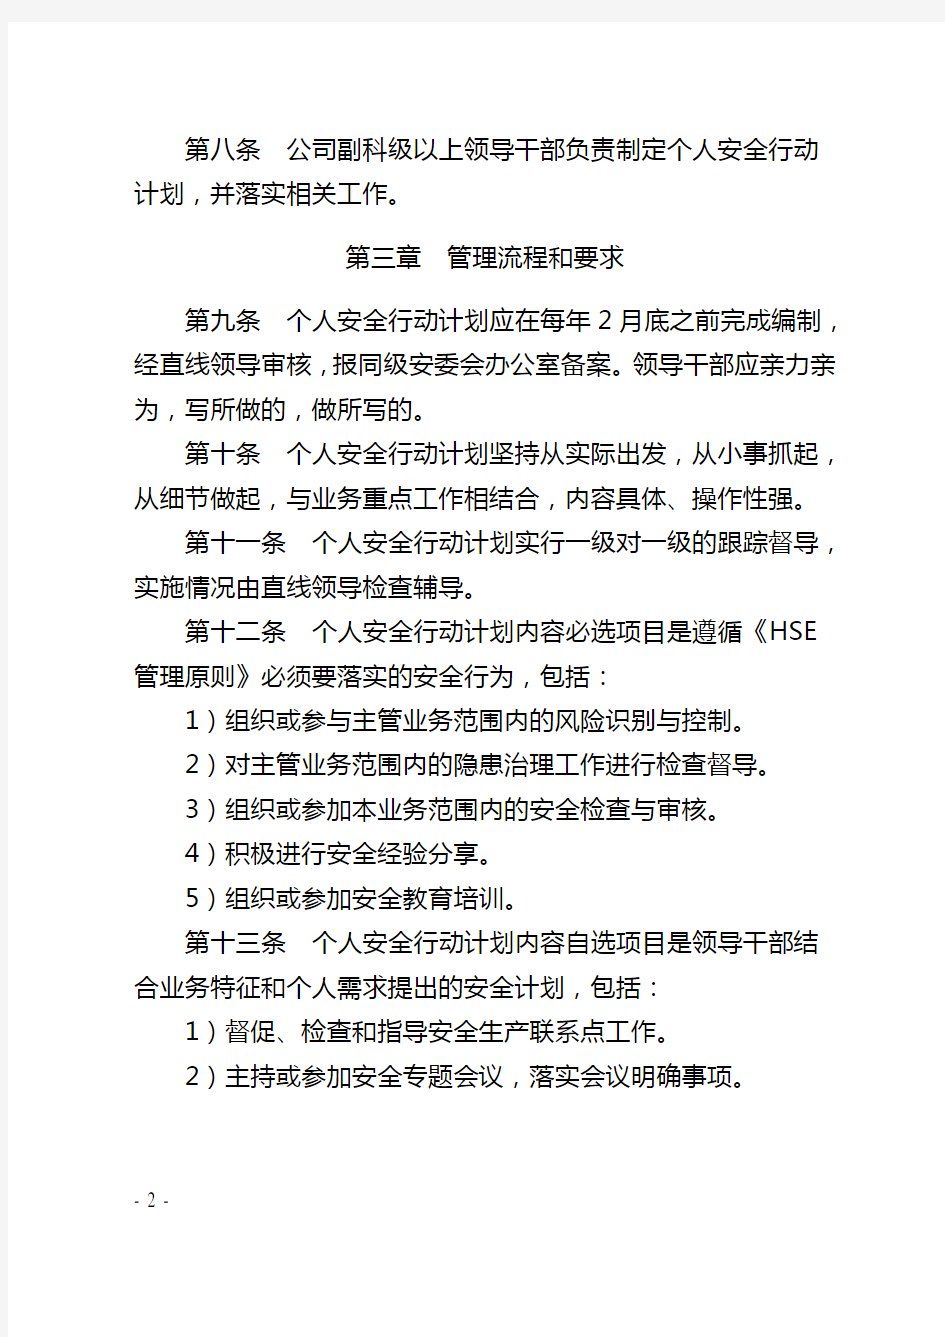 大庆油田公司领导干部个人安全行动计划管理规定